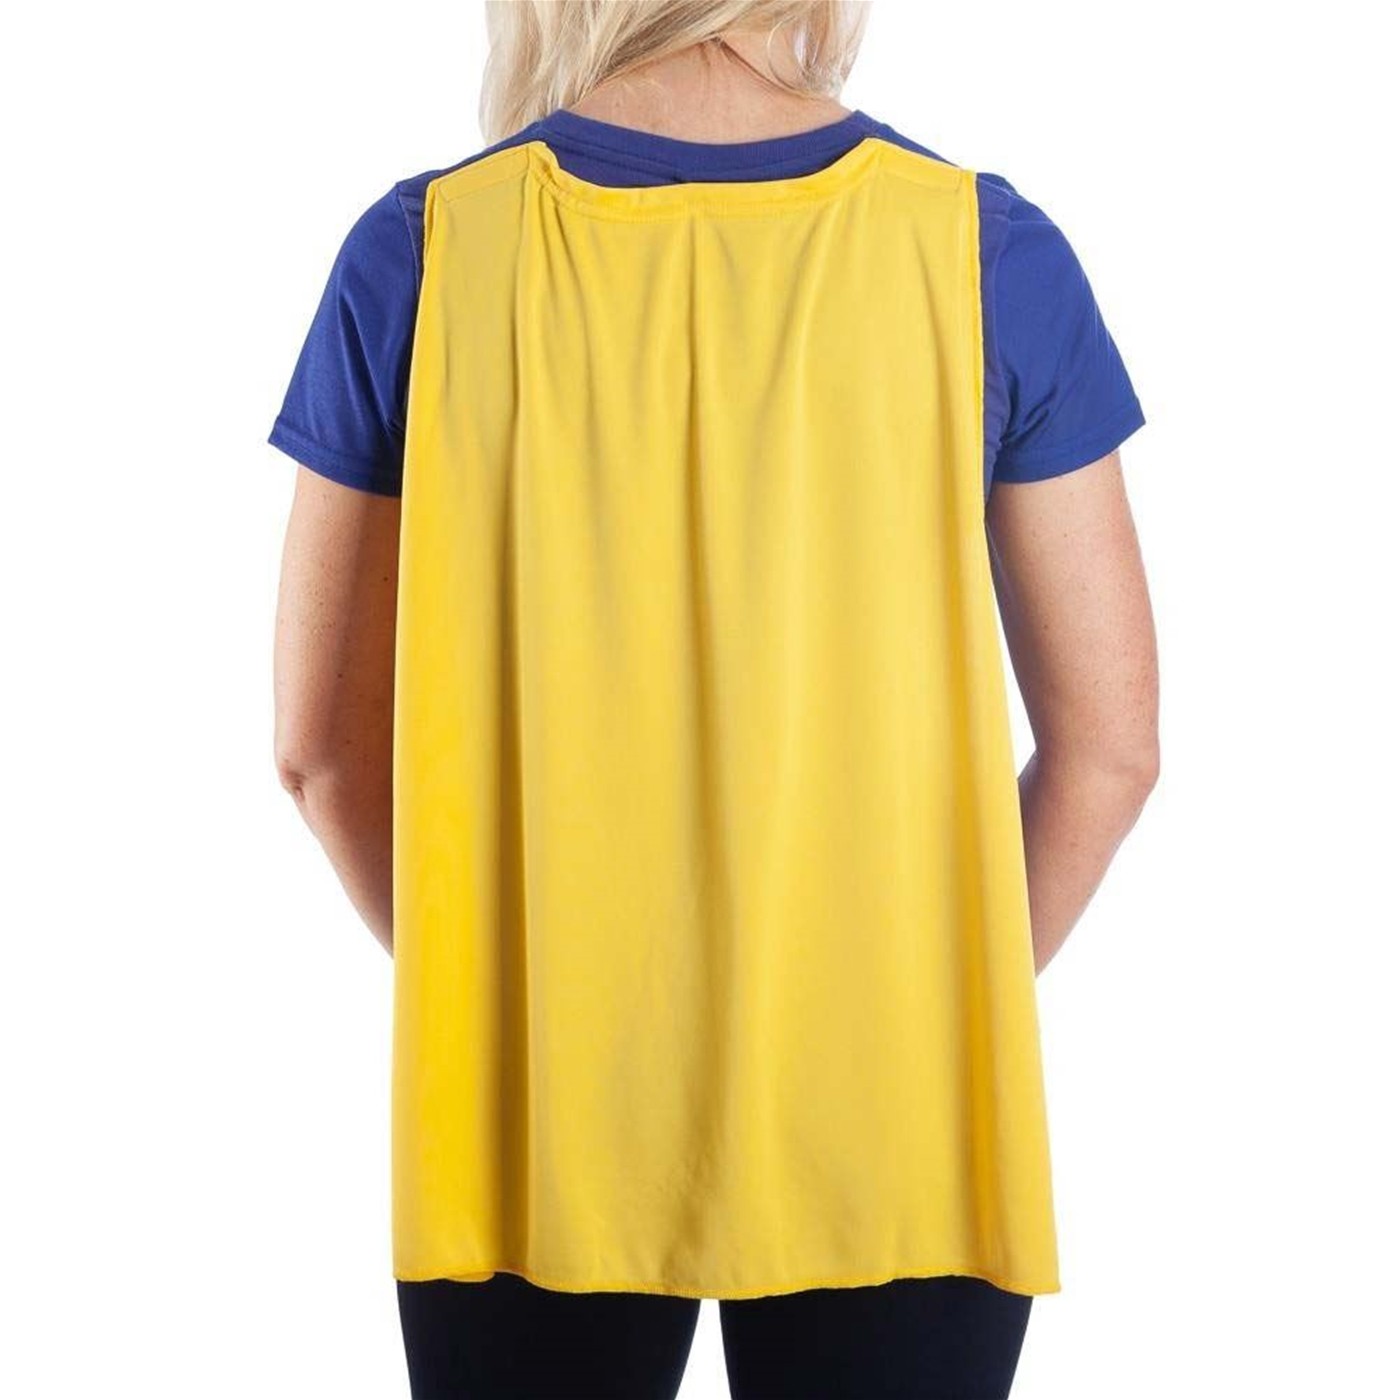 Batgirl Caped Costume Women's T-Shirt